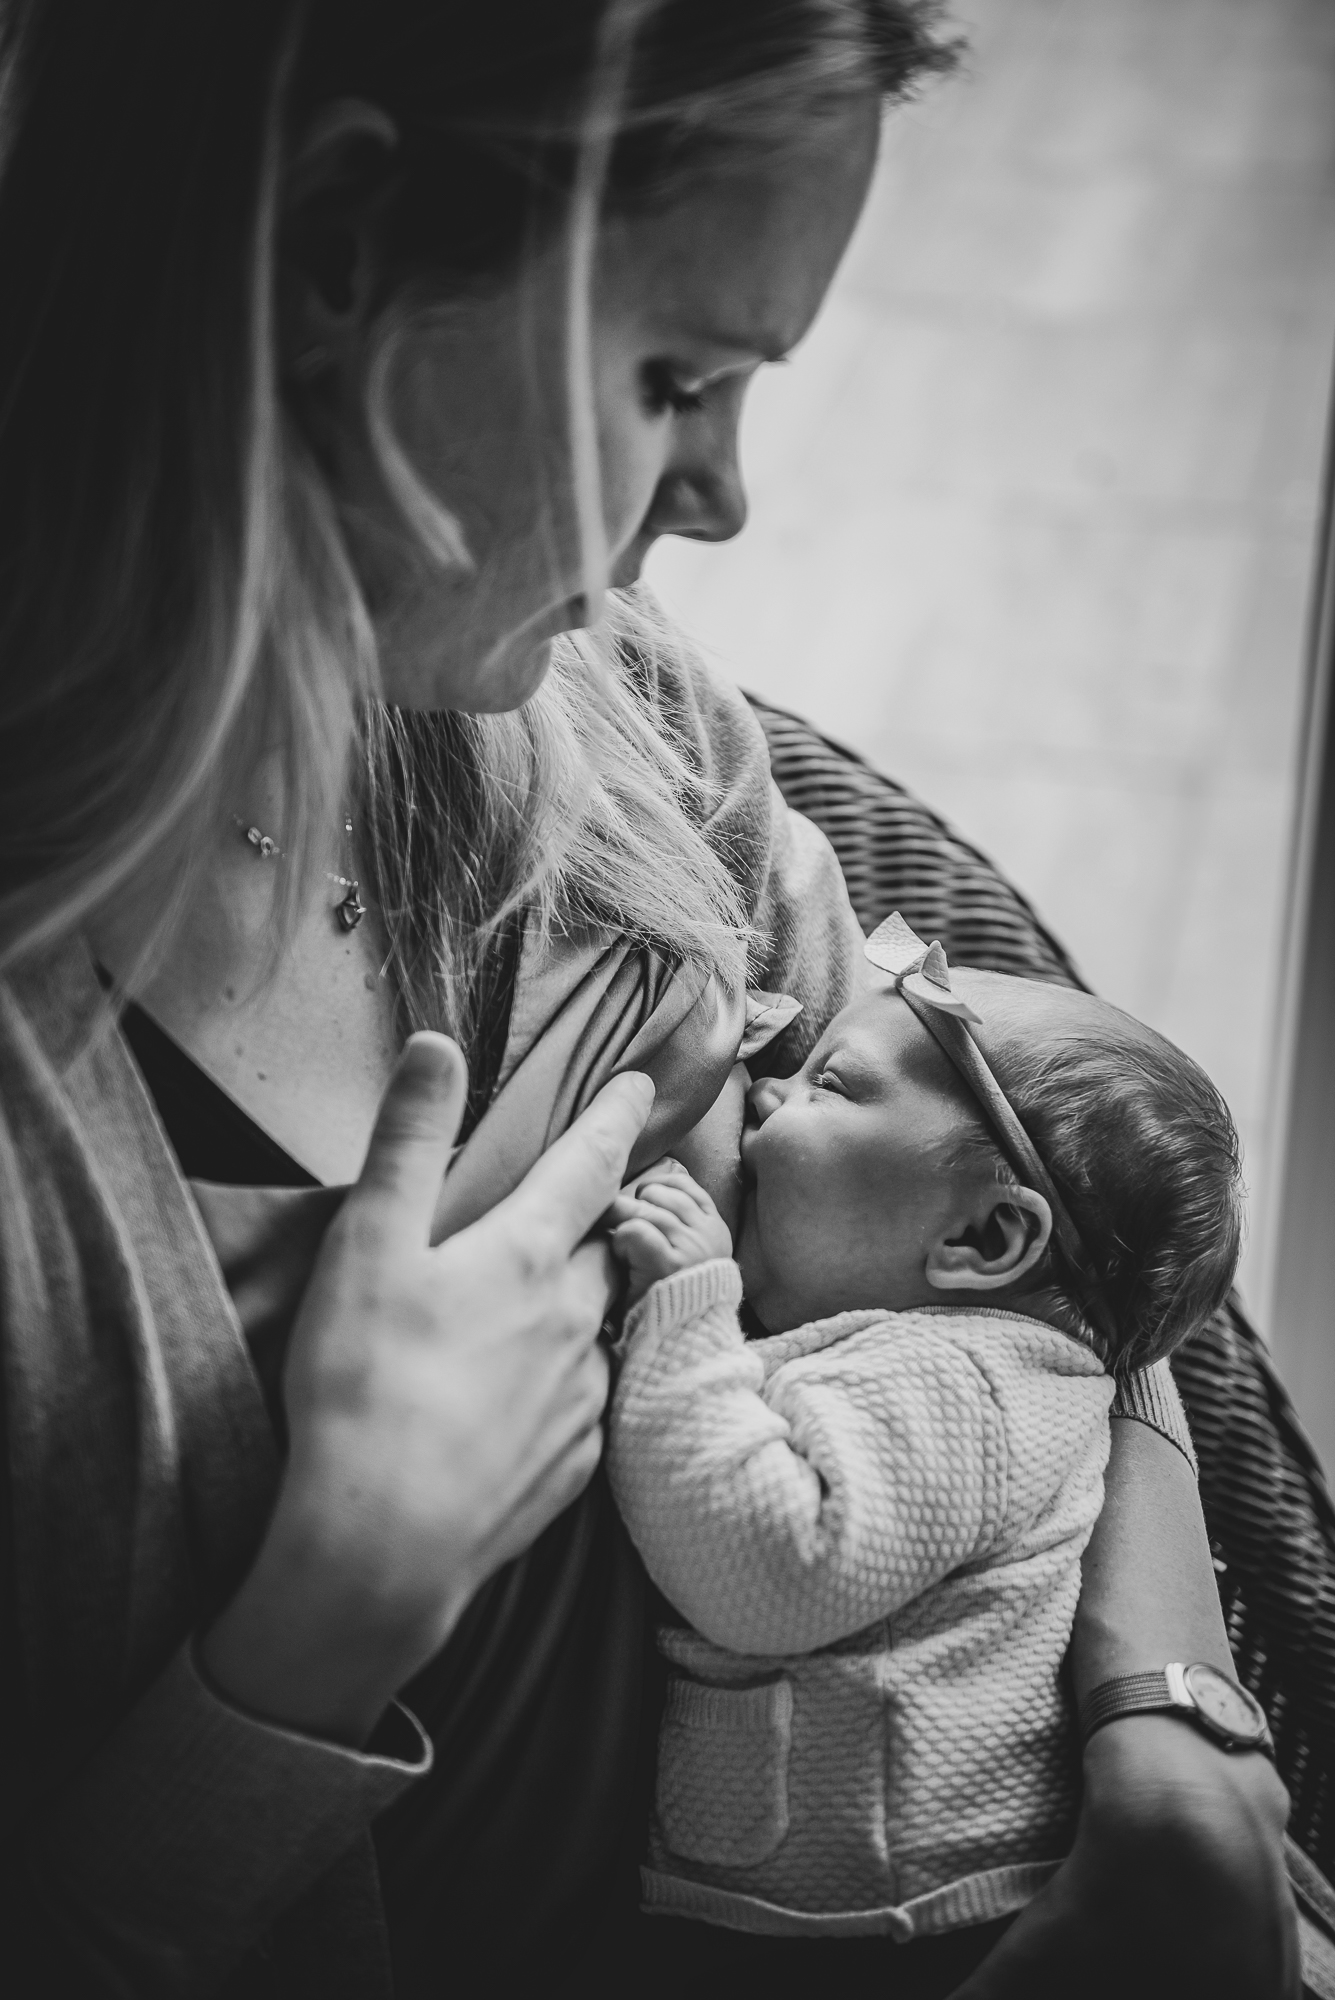 Lifestyle newbornfotografie door fotograaf Nickie Fotografie. Moeder geeft haar baby borstvoeding.